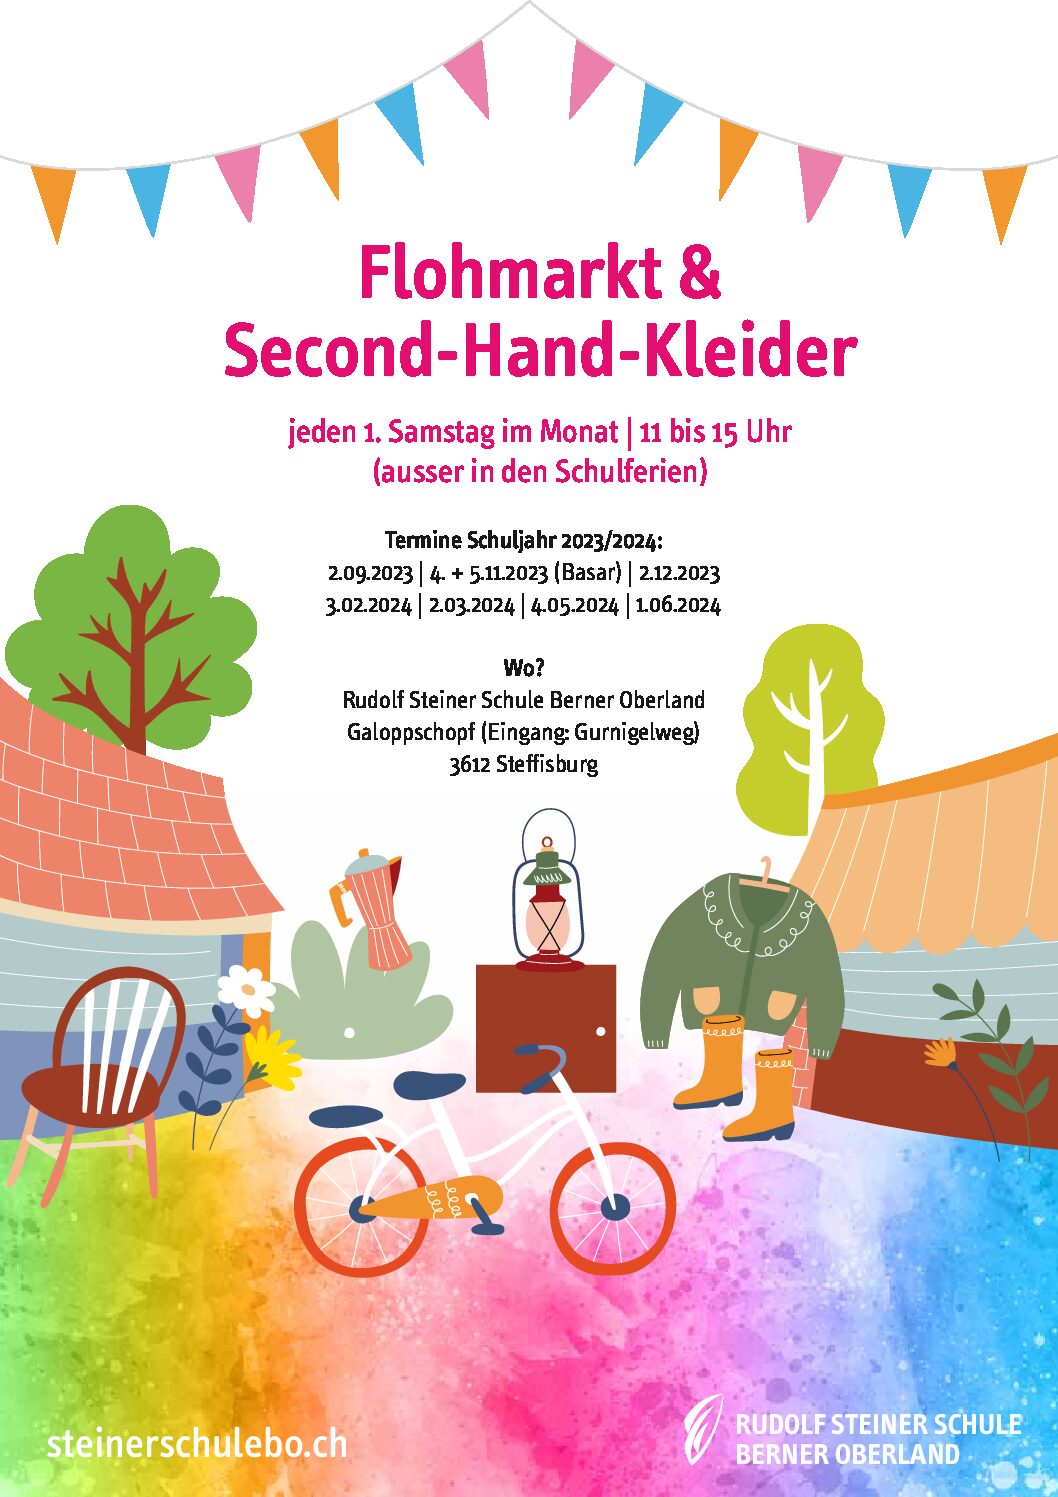 Flohmarkt & Second-Hand-Kleider - Basar 23